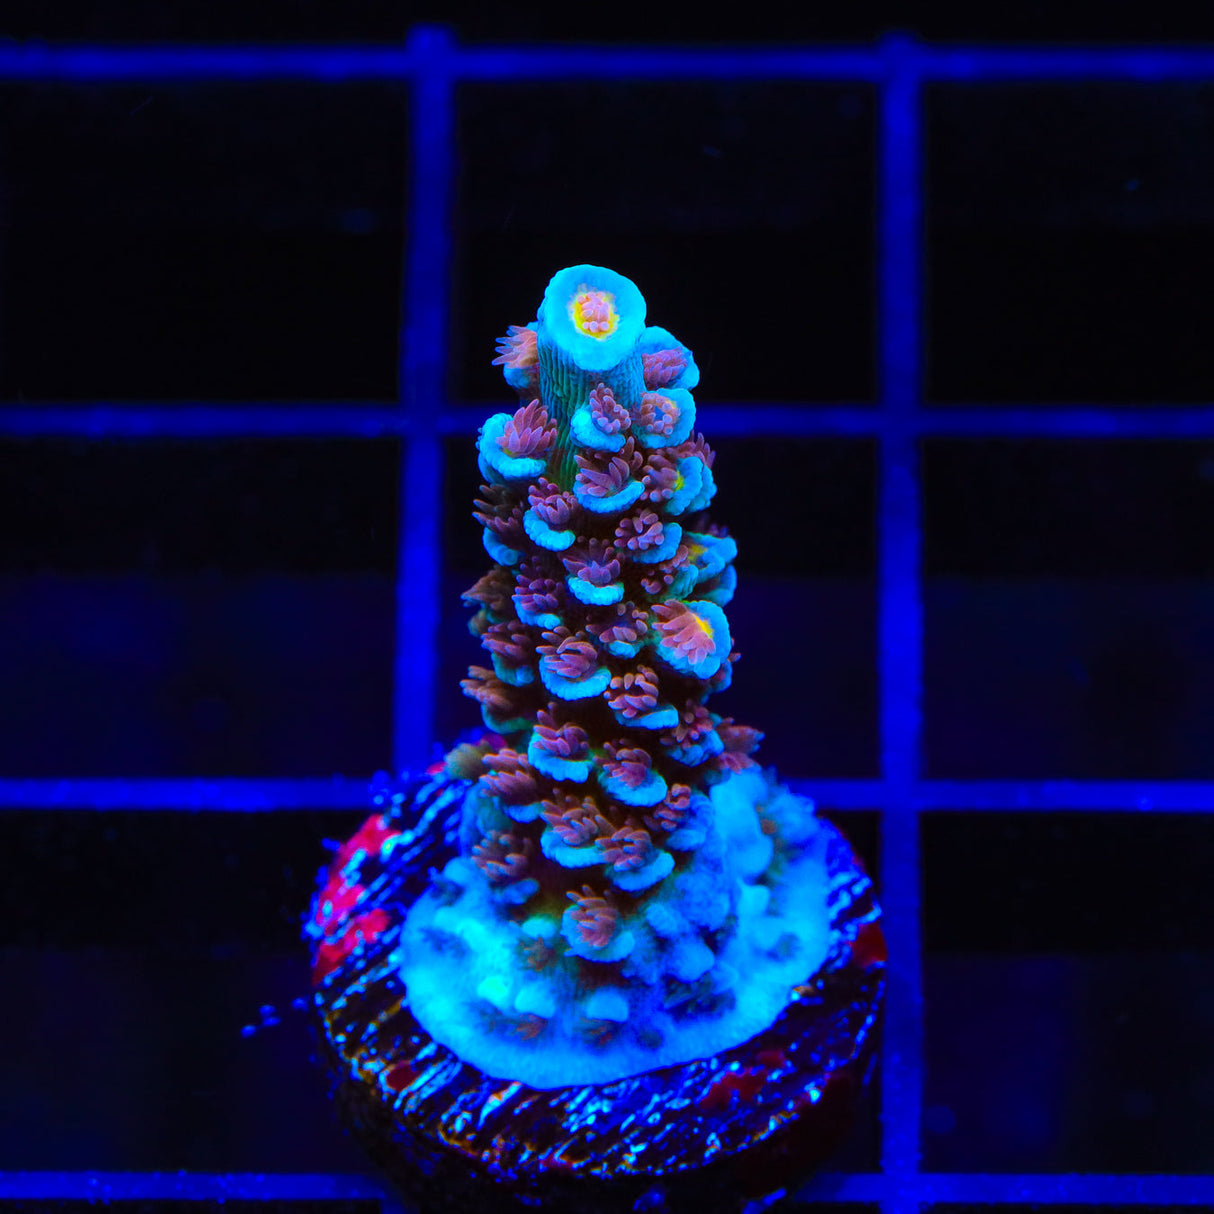 TSA Bubbleyum Acropora Coral - Top Shelf Aquatics